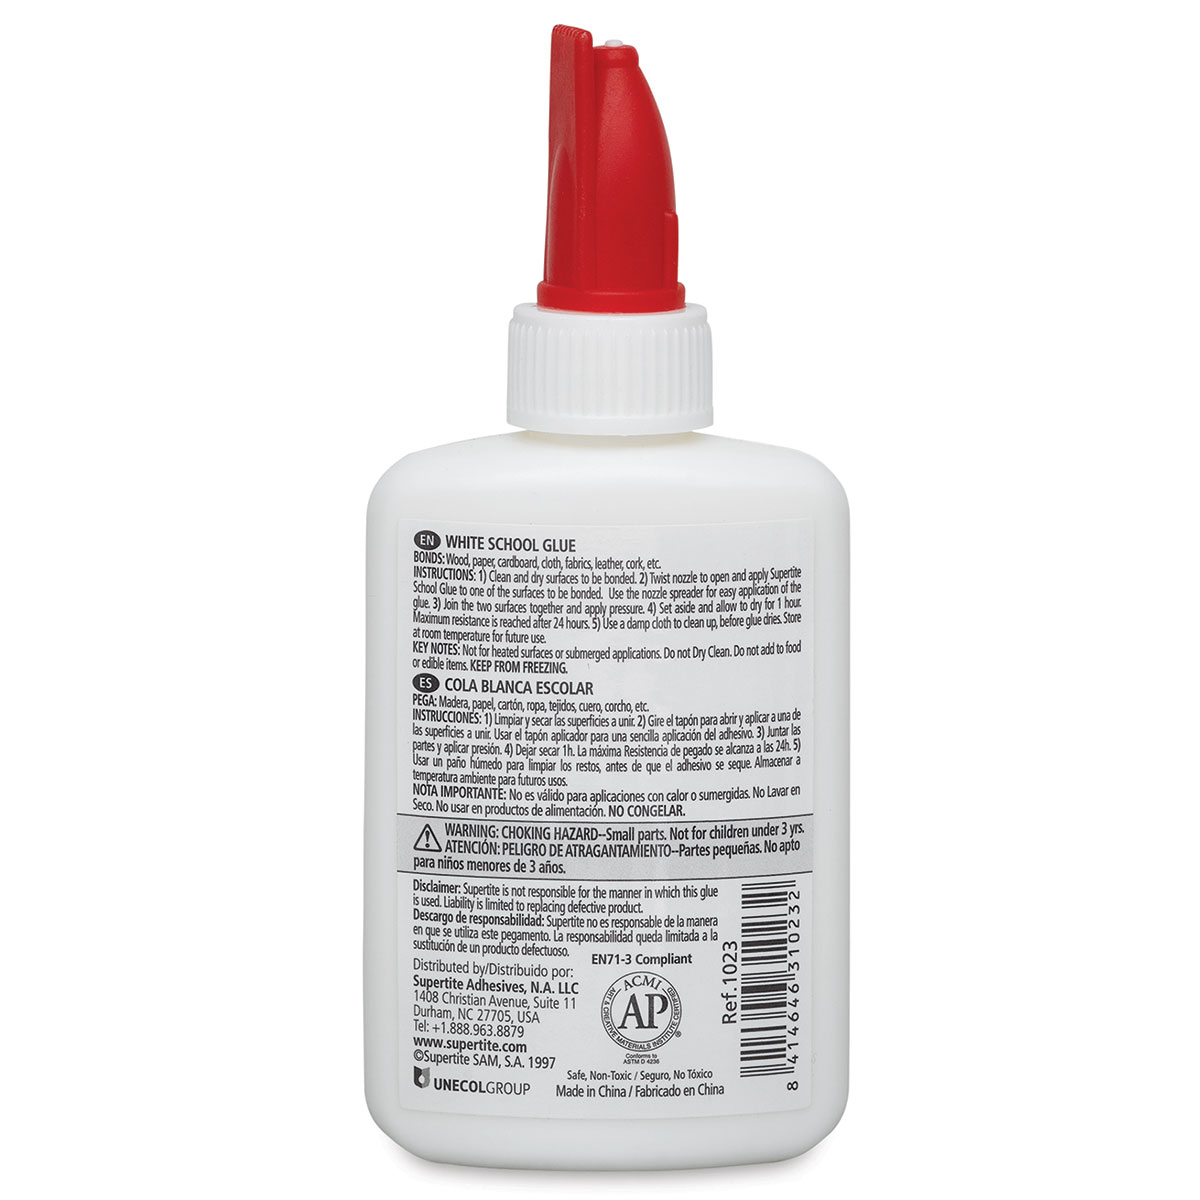 Supertite White School Glue, 1.91 oz